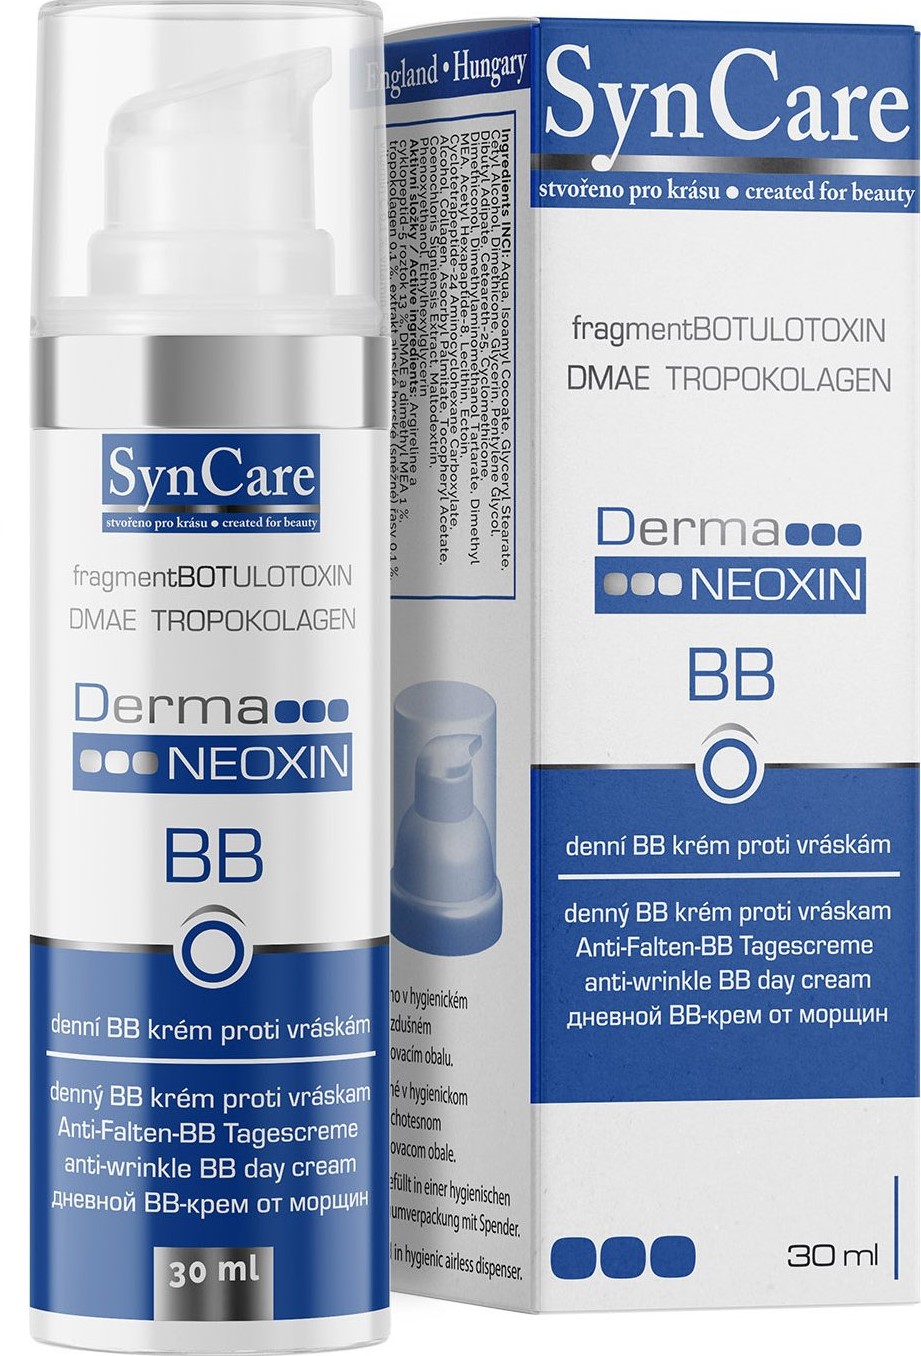 SynCare DermaNEOXIN noční krém, 30ml